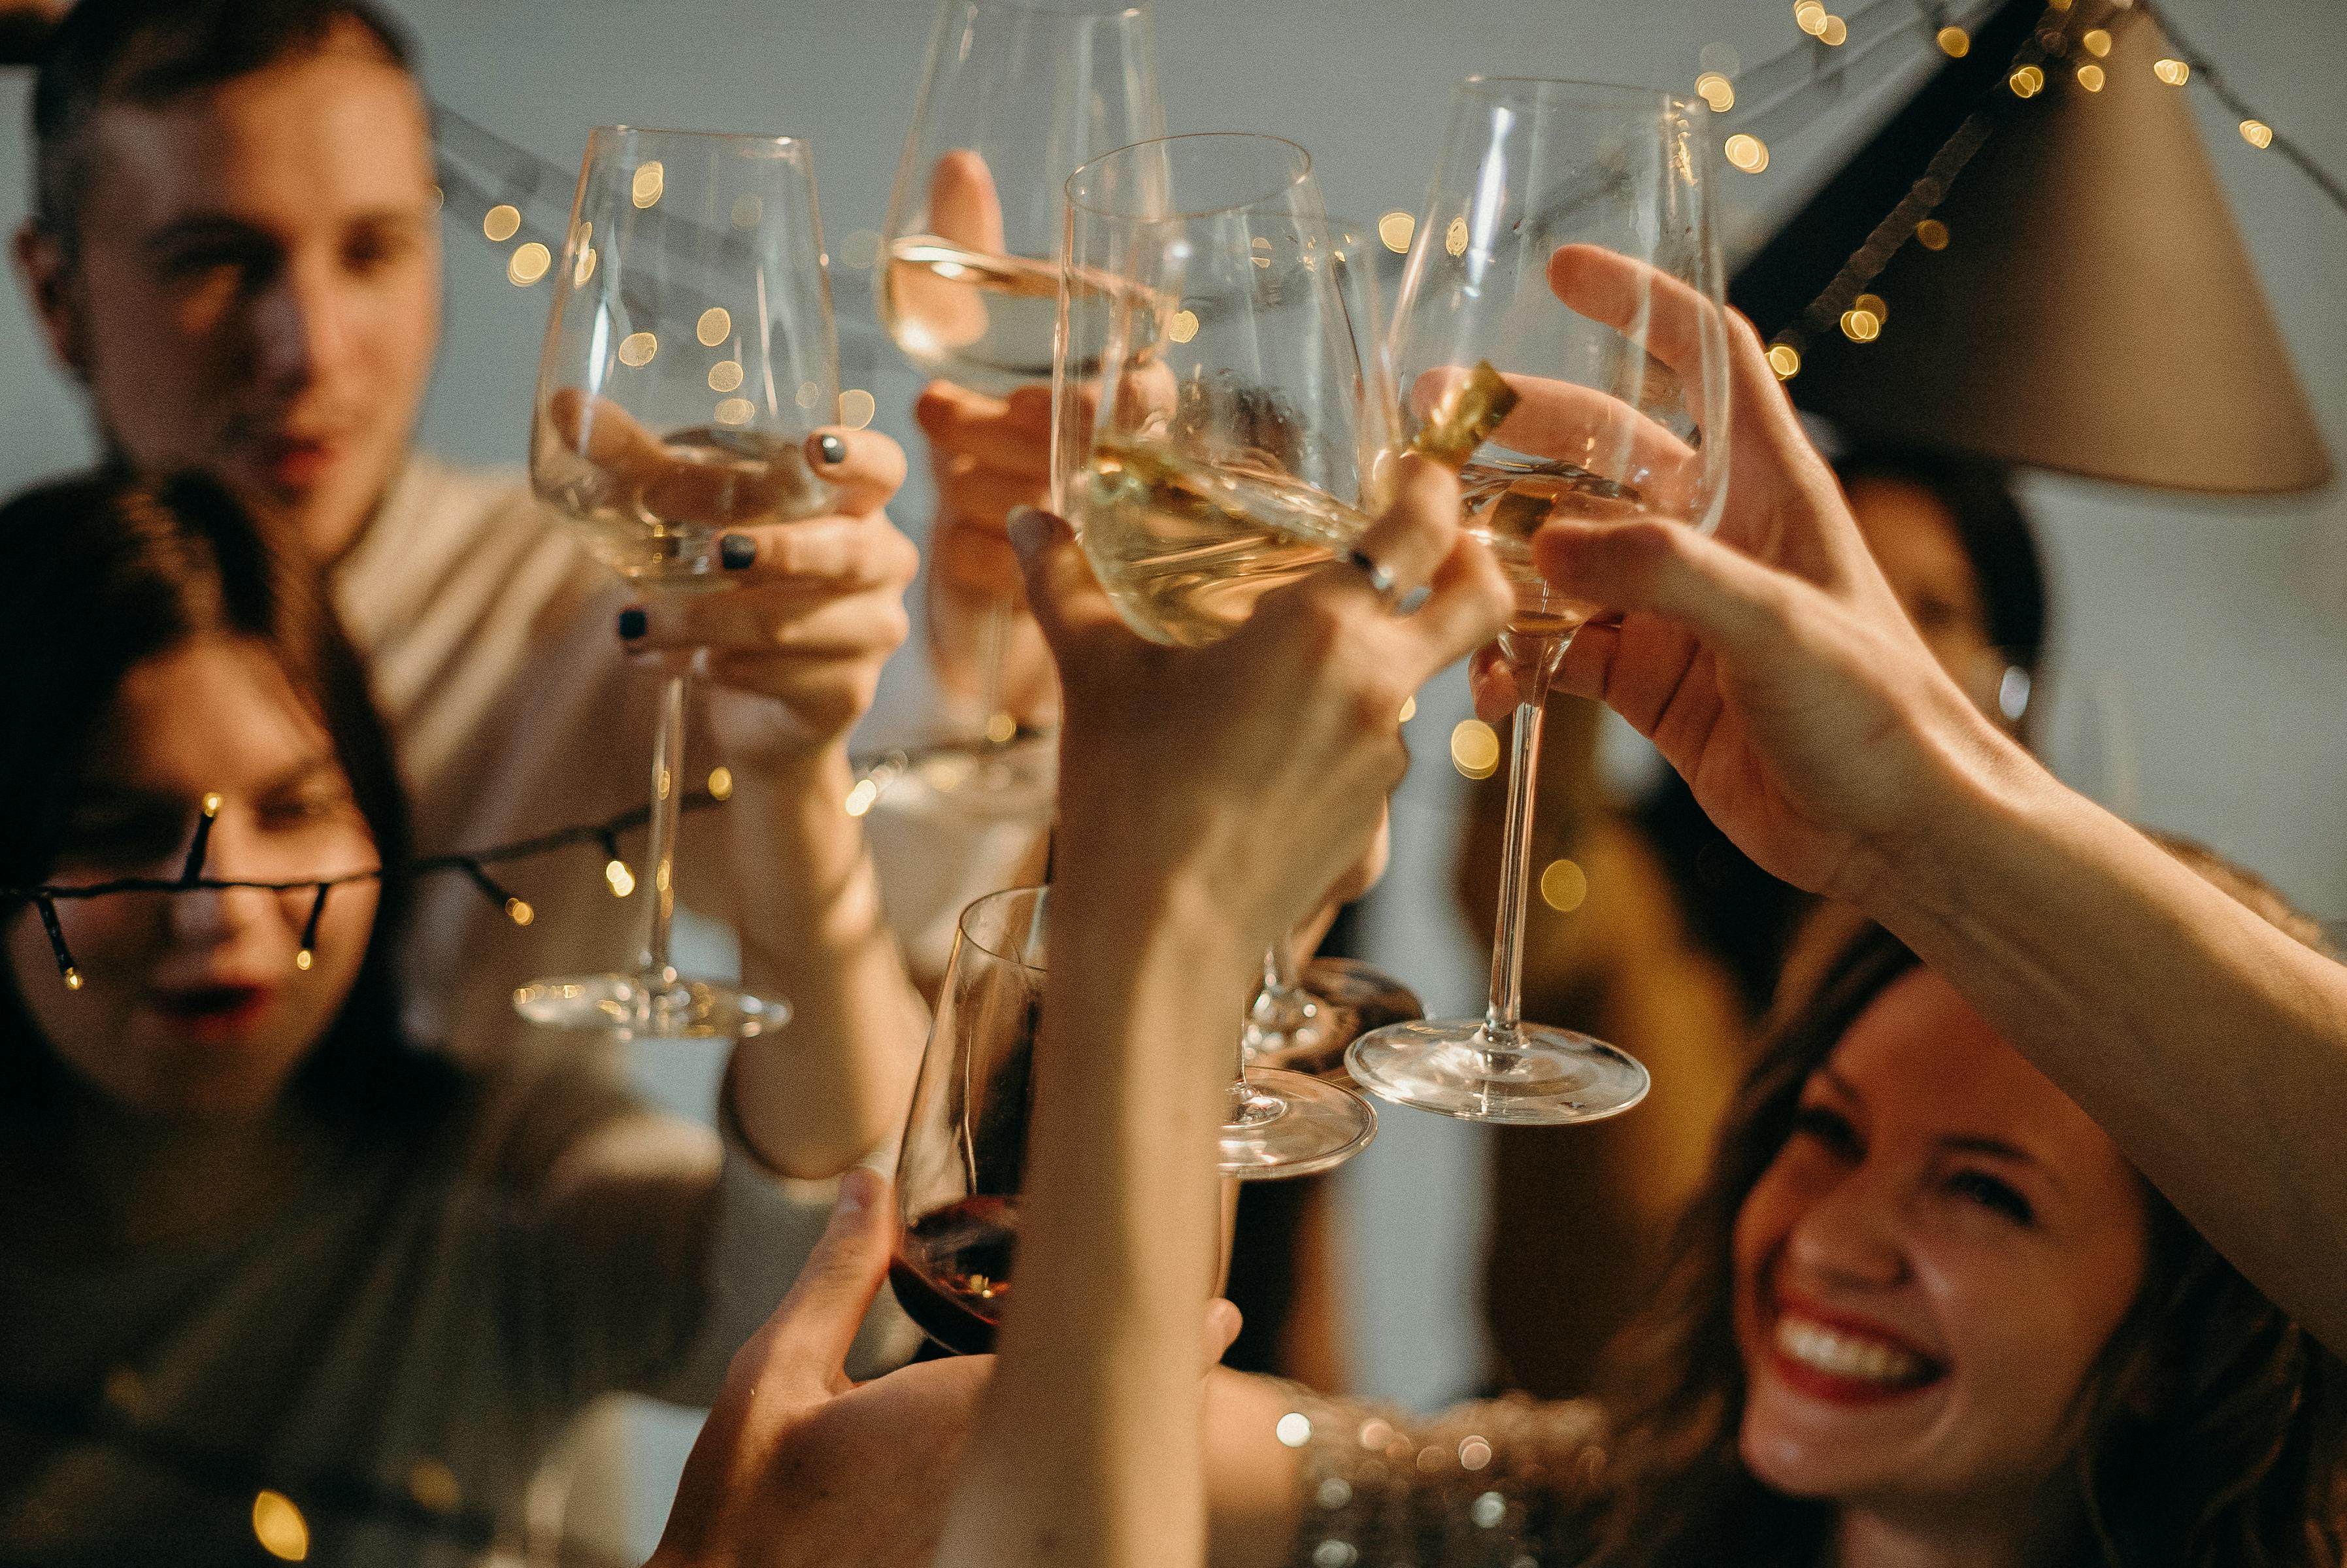 Des personnes lèvent leur verre pendant un toast | Source : Pexels